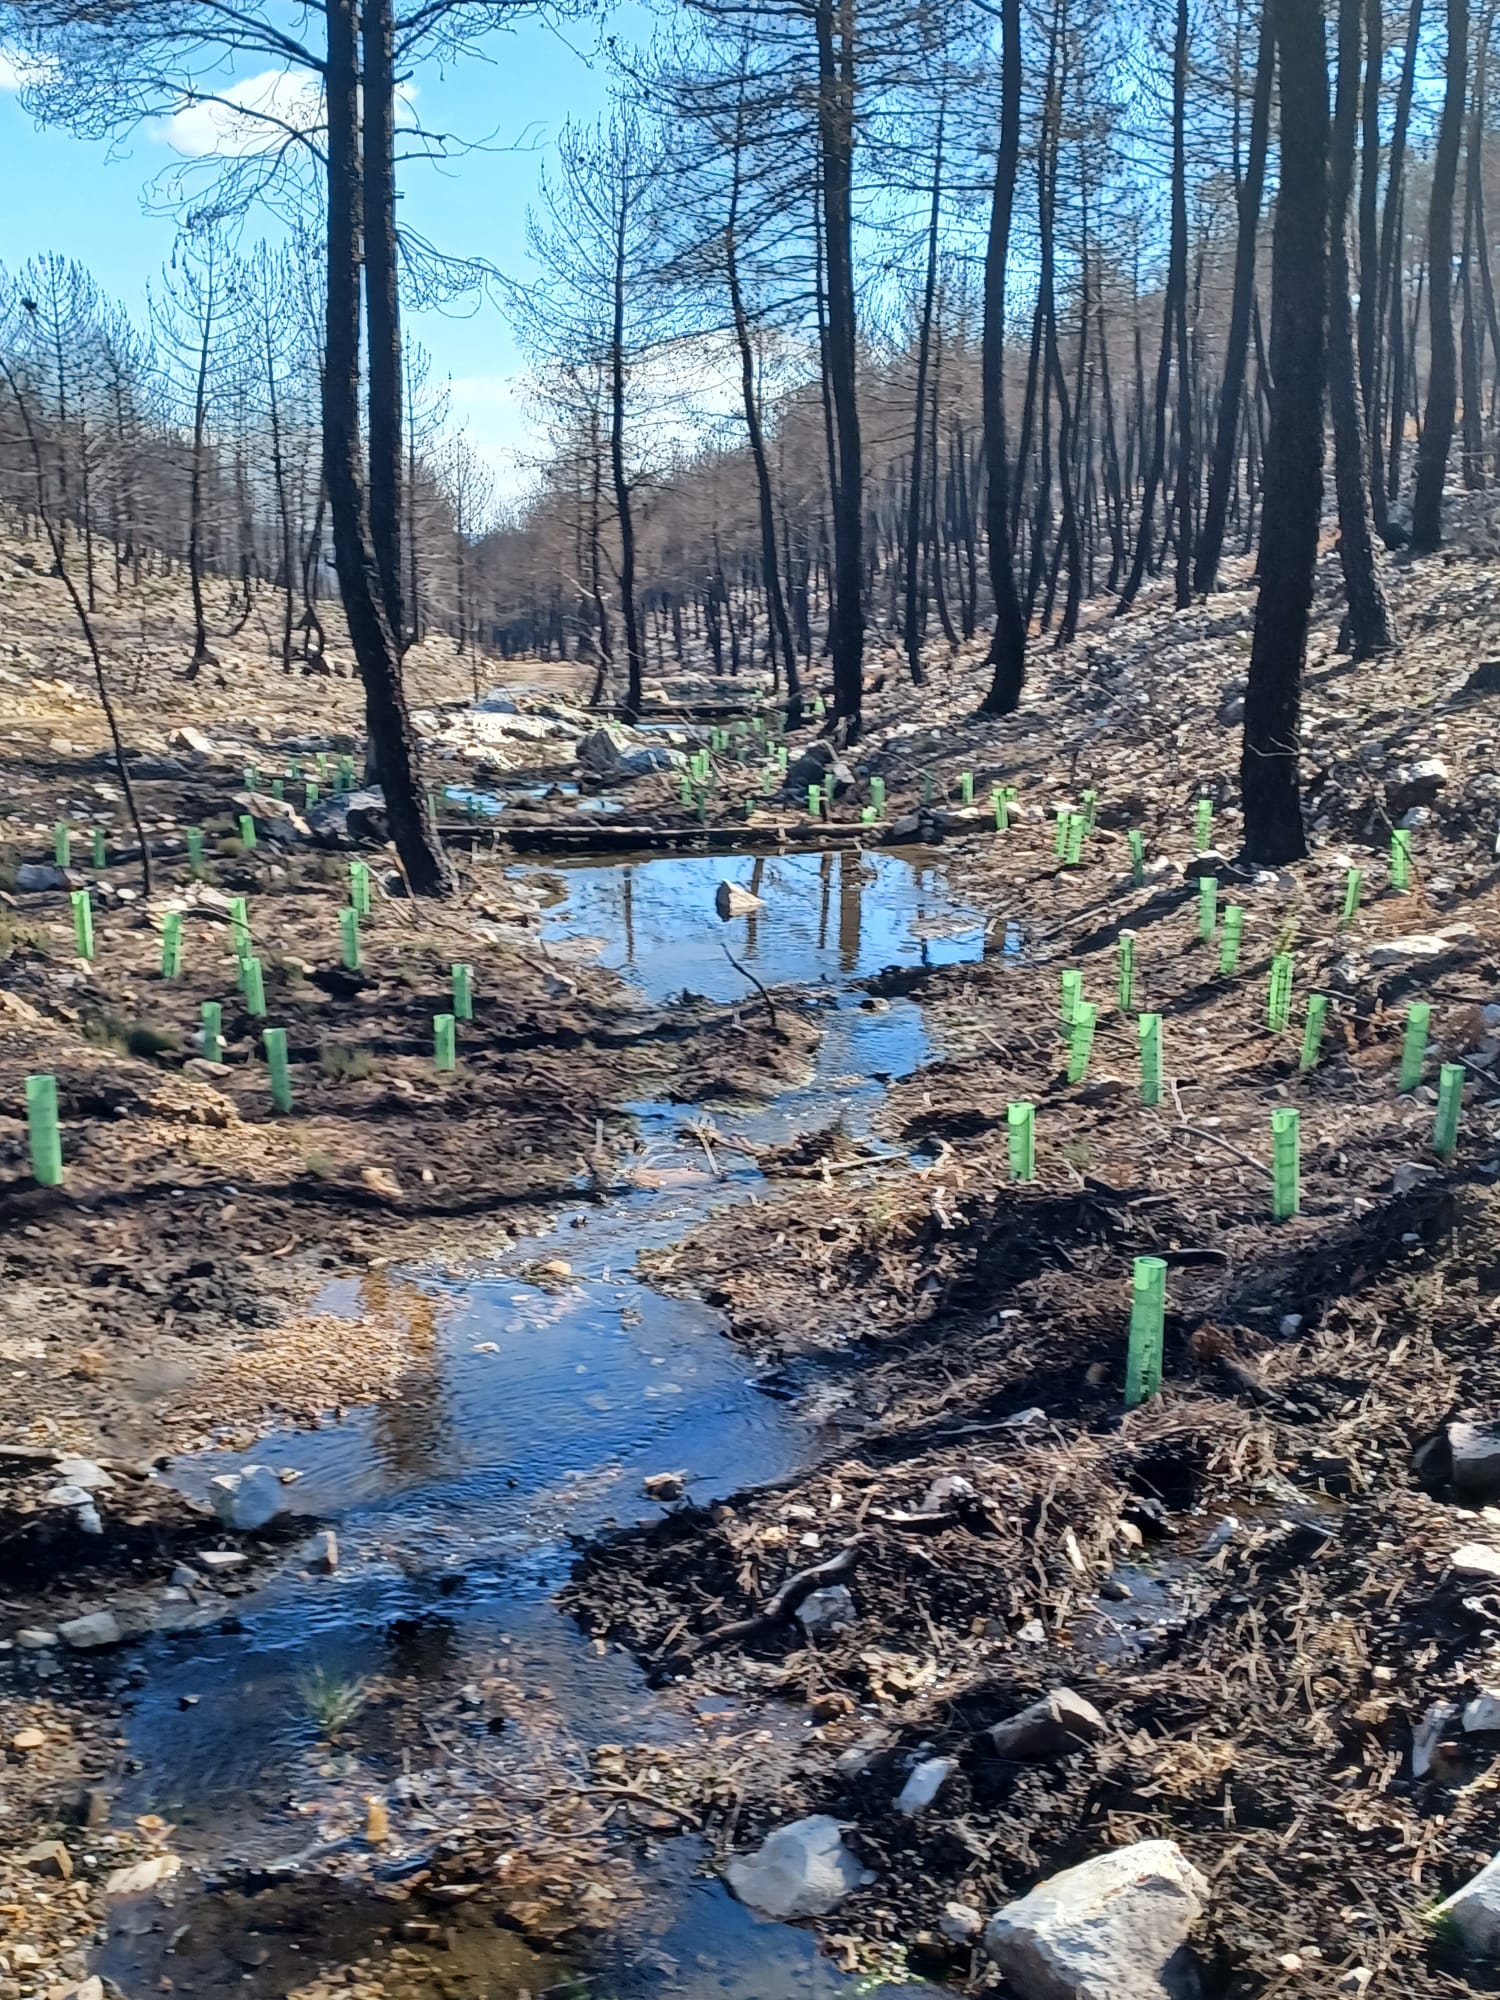 La CHD planta 50.000 árboles y arbustos producidos en sus viveros para actuaciones de restauración fluvial - Imagen 1